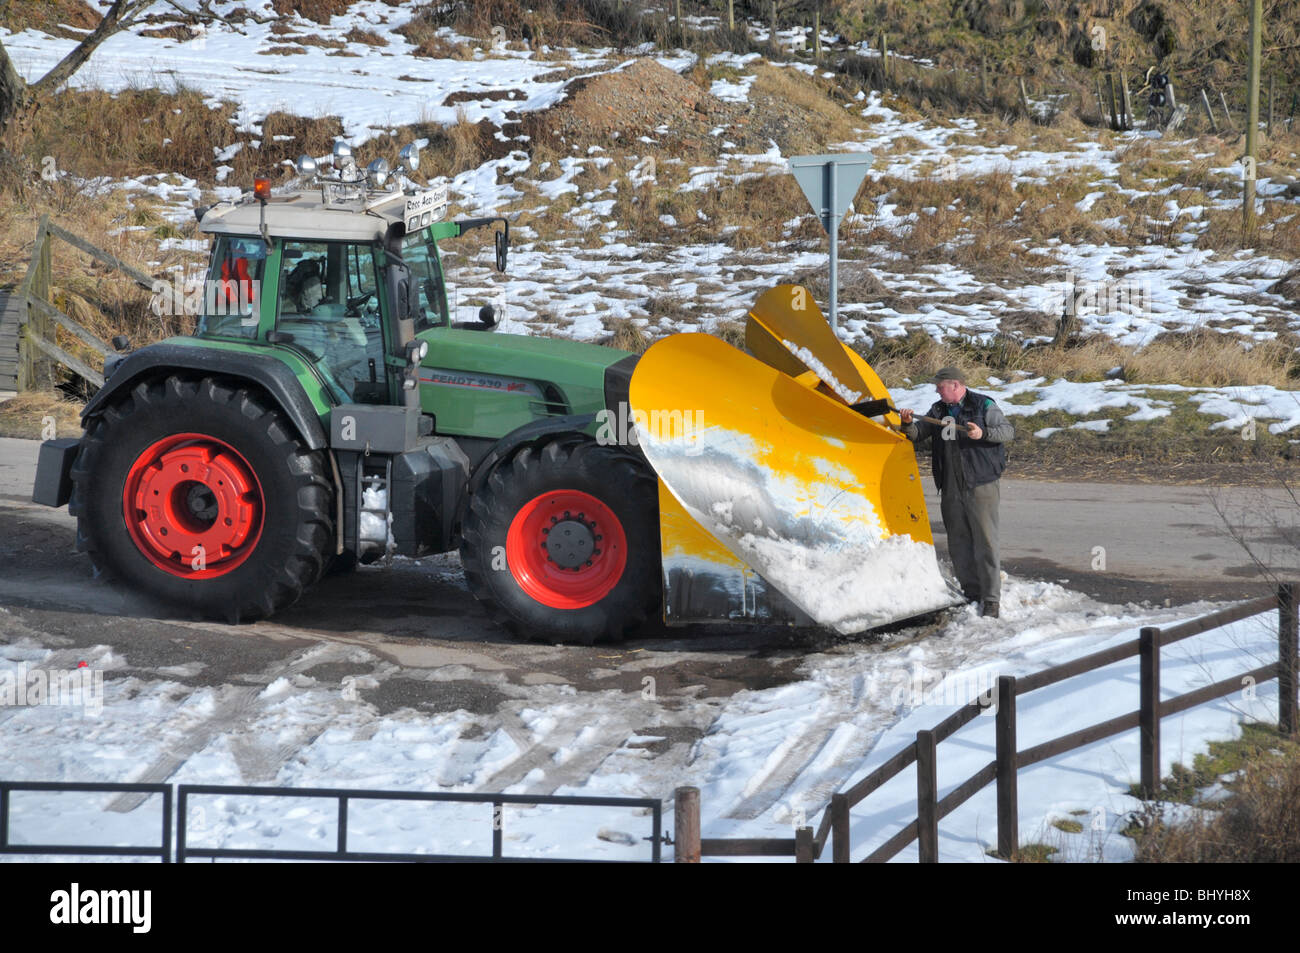 Un homme de neige gelée hors des pelles un tracteur chasse-neige / charrue. Banque D'Images